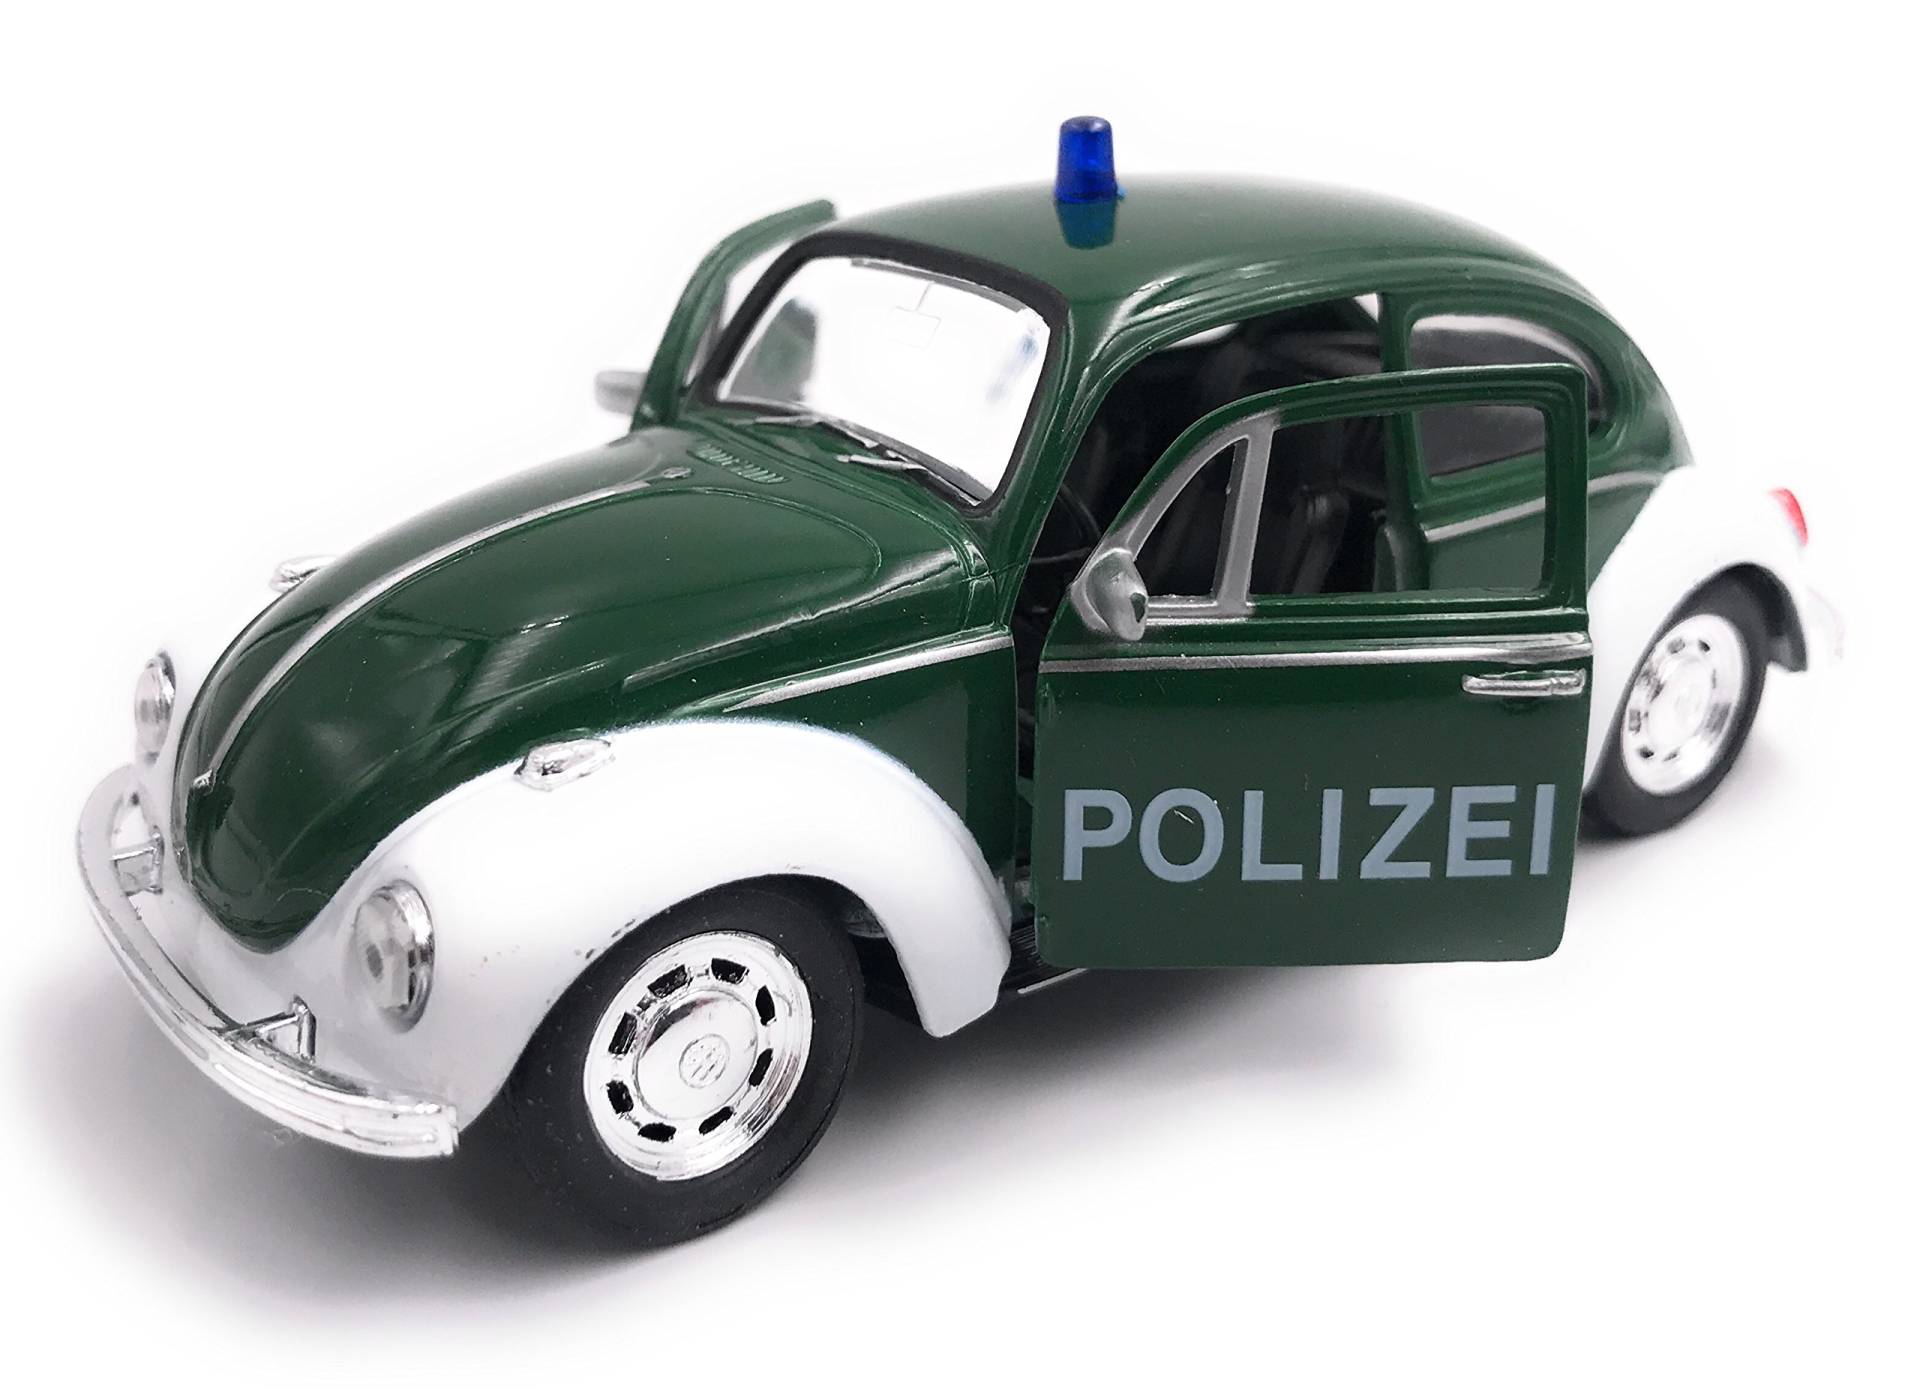 H-Customs Käfer Polizei Modellauto Auto grün Lizenzprodukt 1:34-1:39 von H-Customs